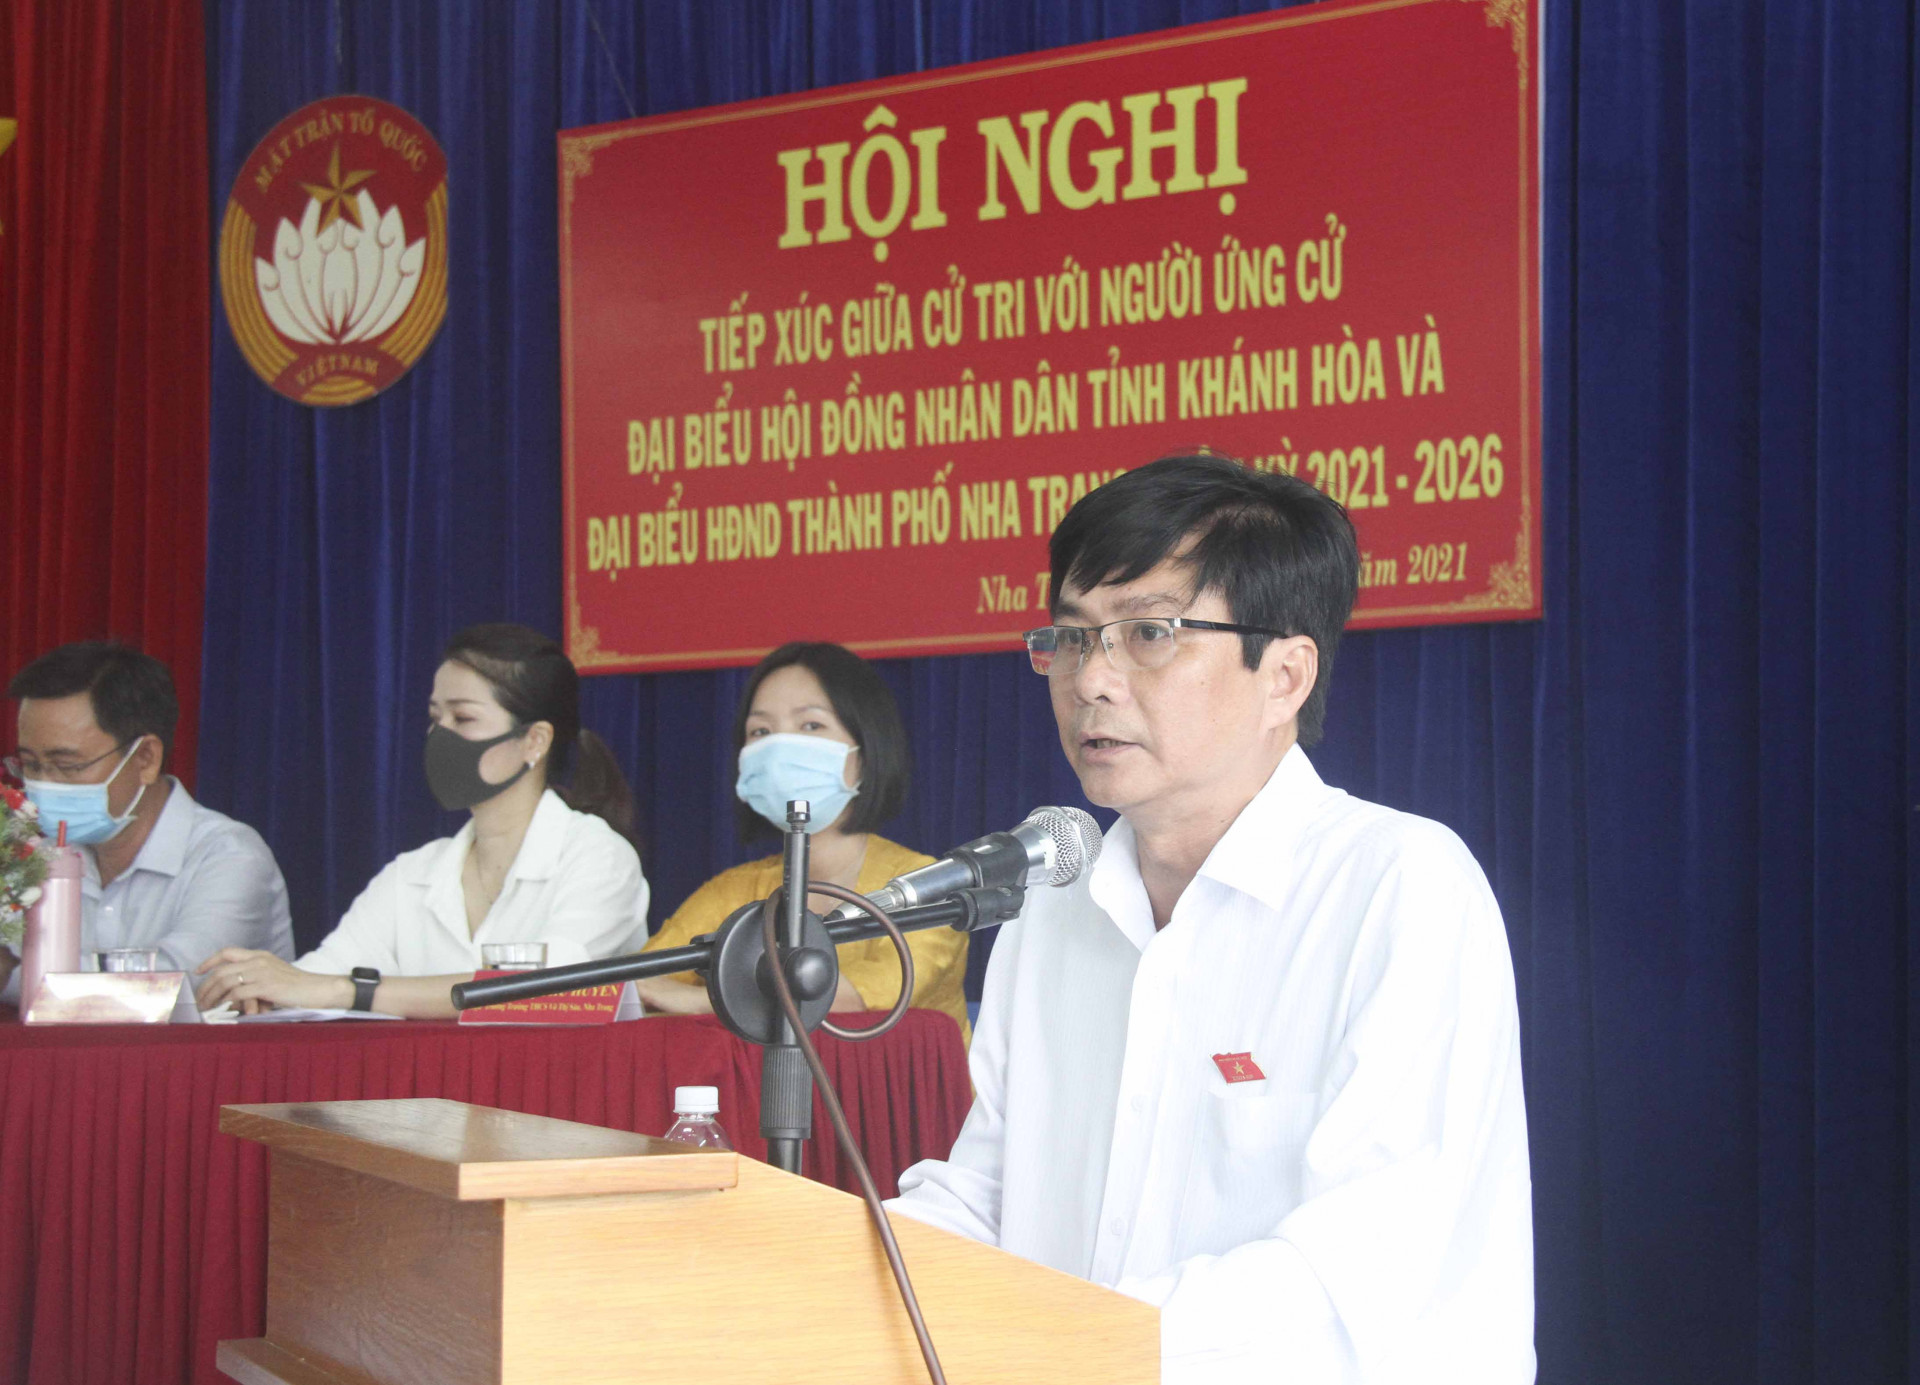 Ông Lữ Thanh Hải trình bày chương trình hành động ứng cử đại biểu HĐND tỉnh nhiệm kỳ 2021-2026 trước cử tri phường Vĩnh Hải, TP. Nha Trang